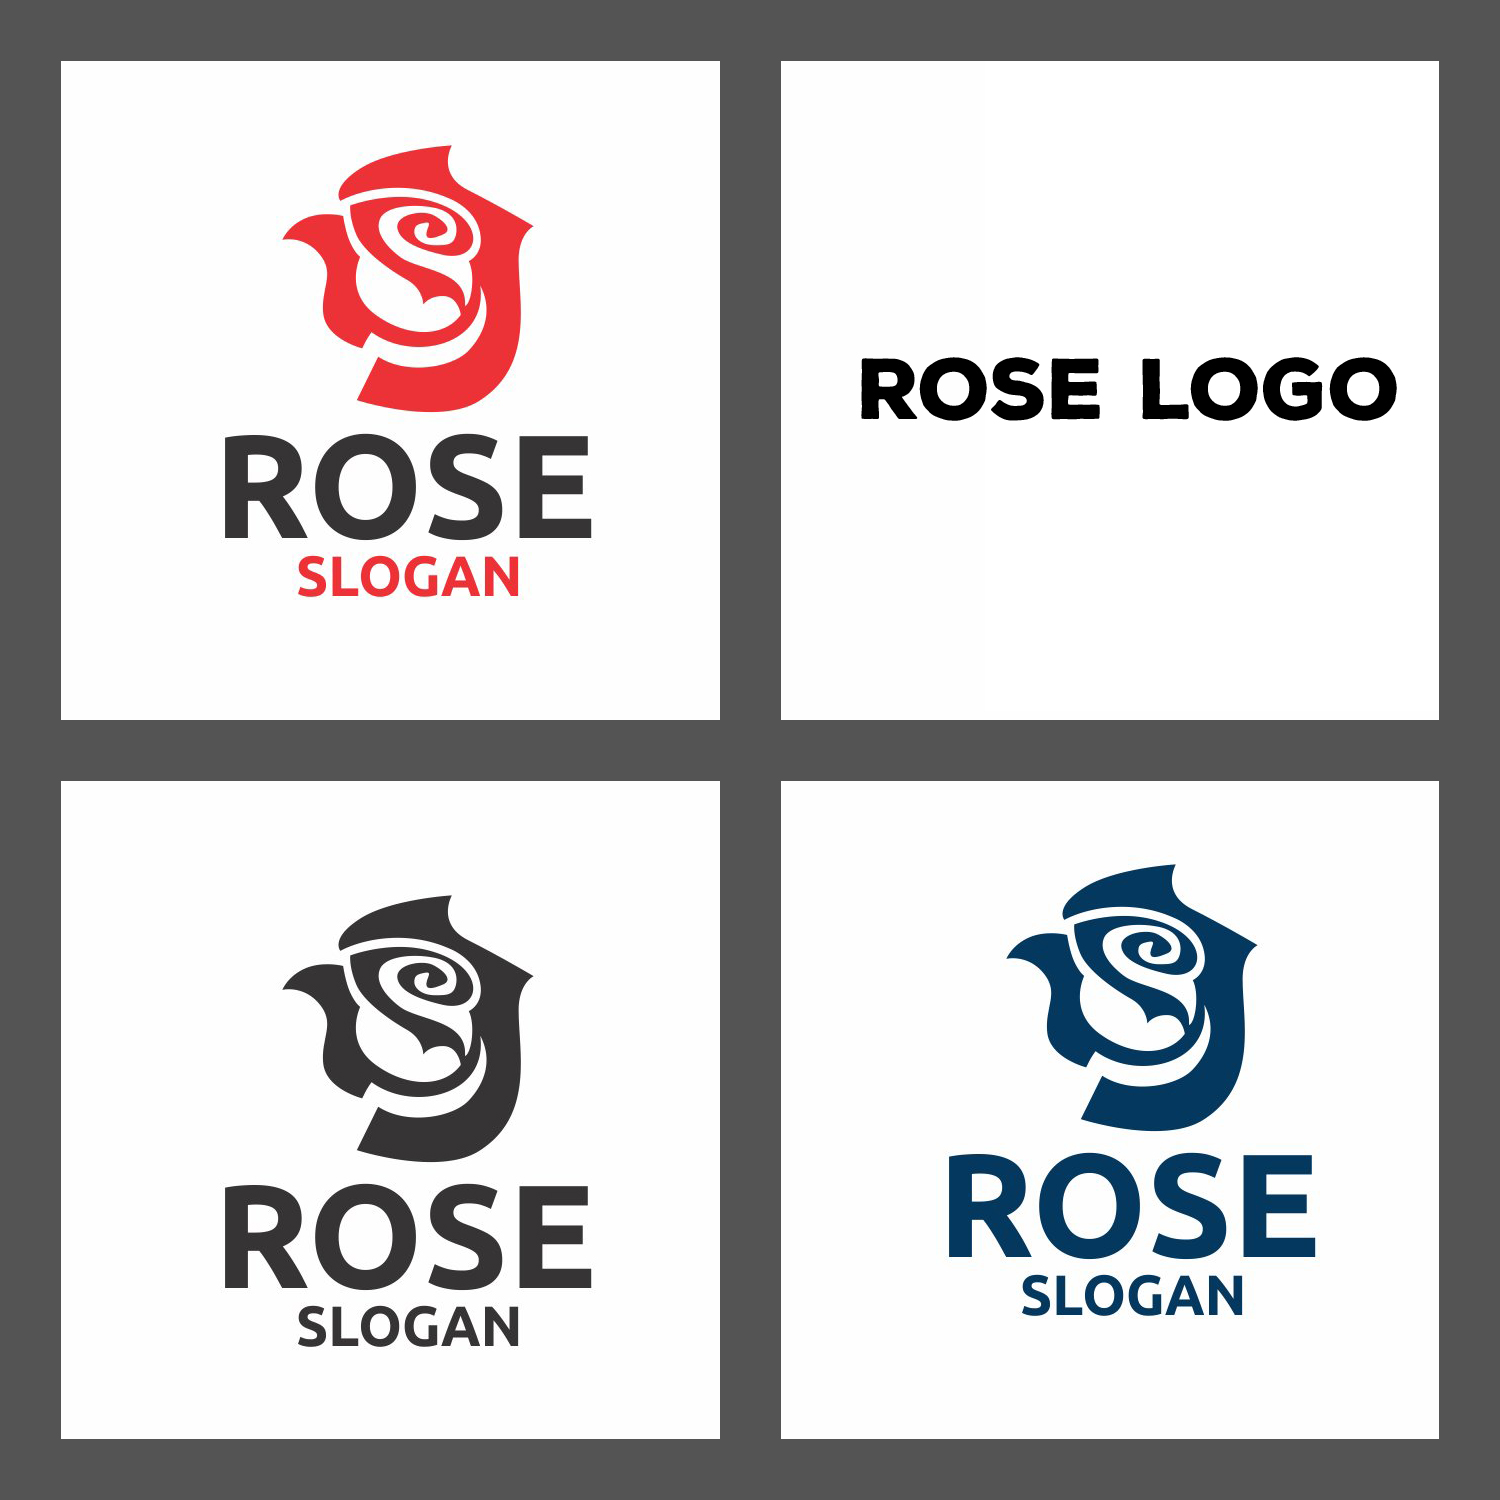 Prints of rose logo.